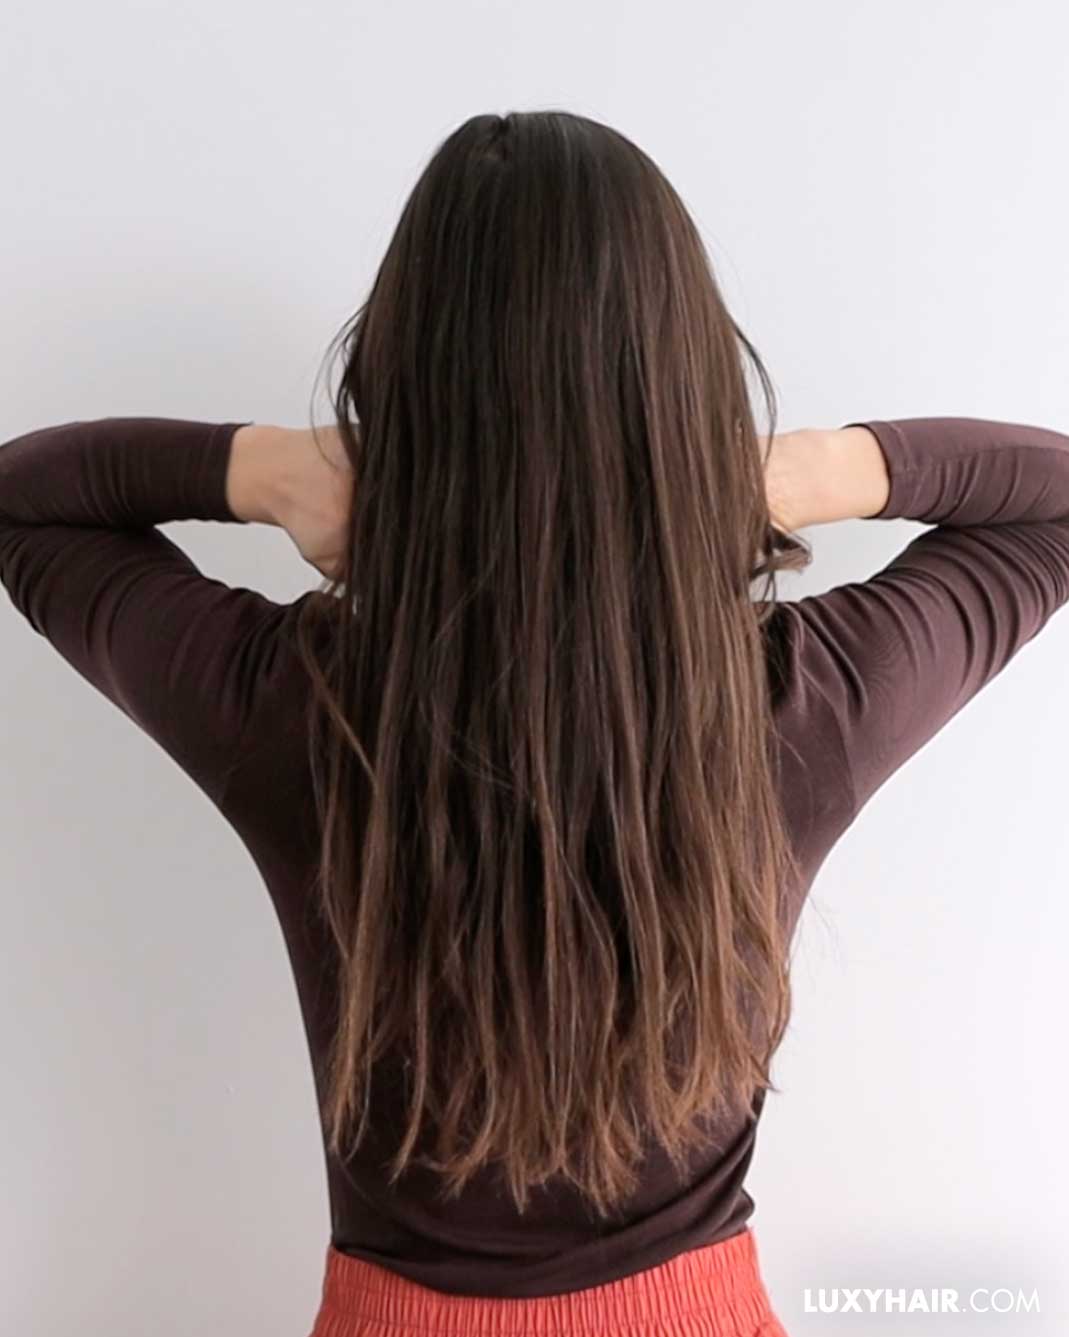 Long wavy hair